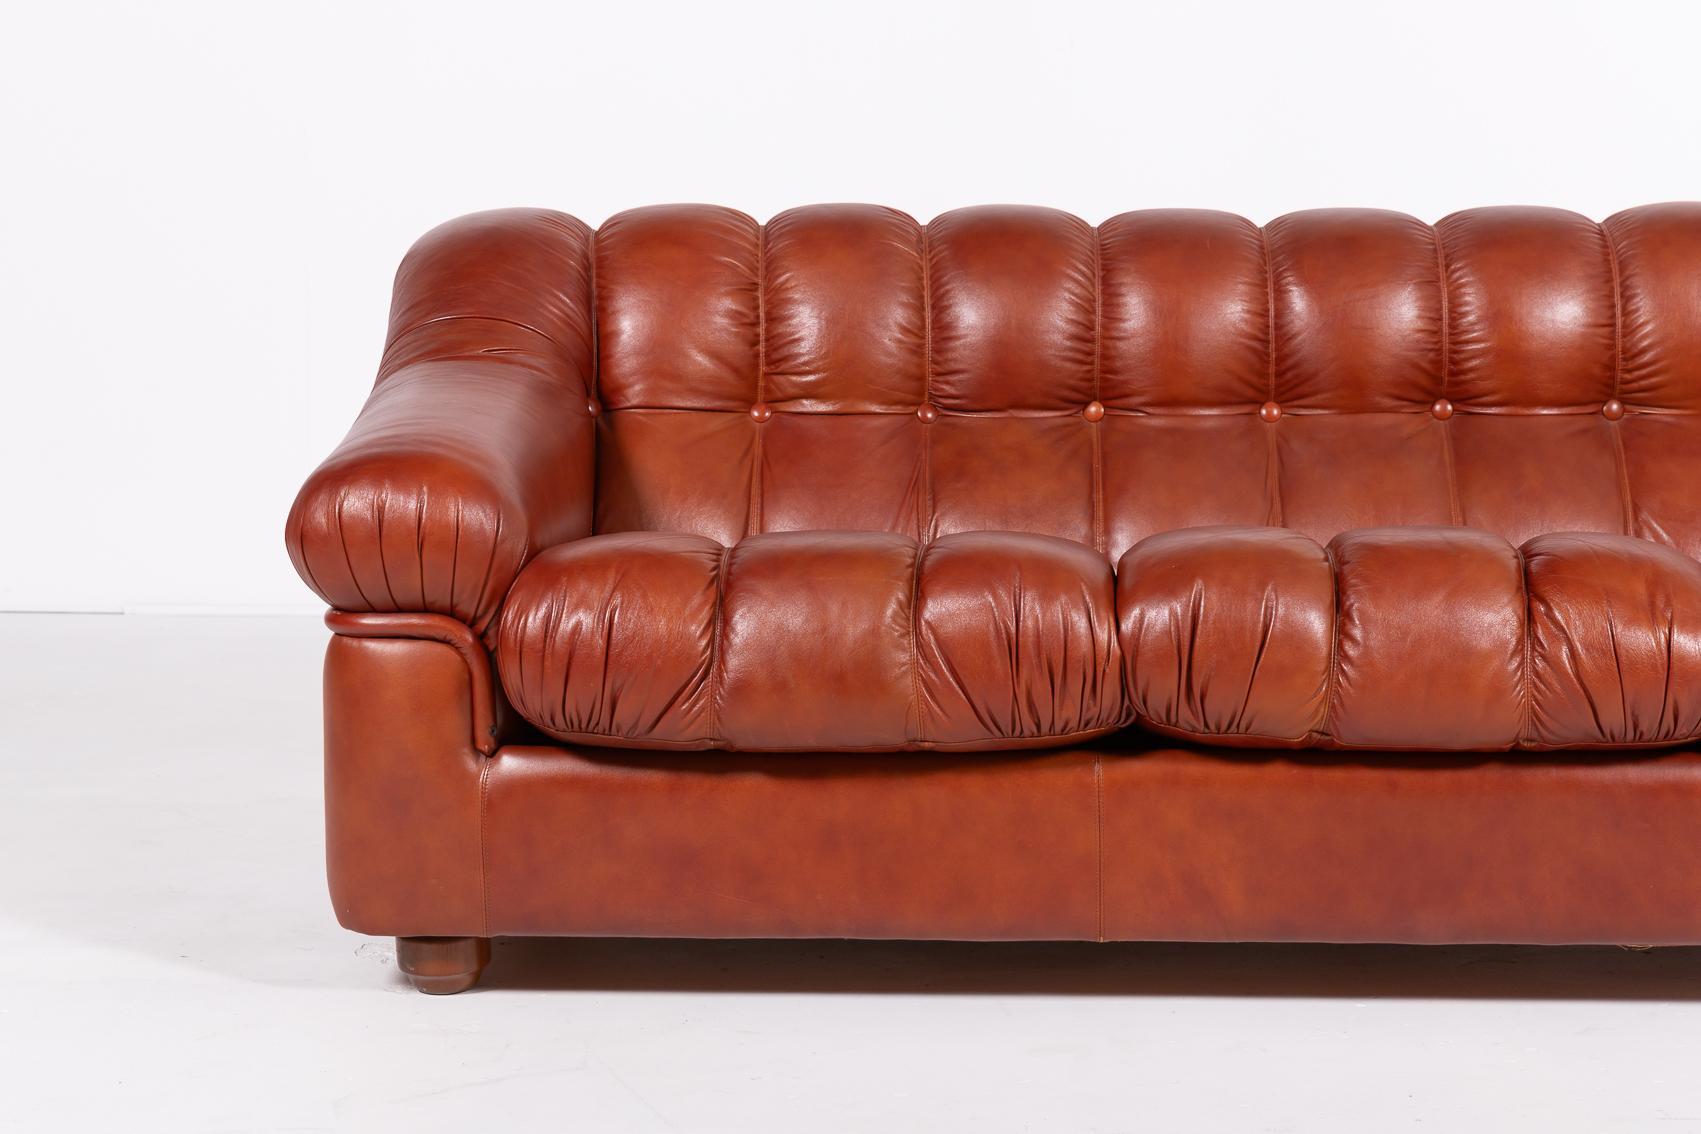 Schöne Form Italienisch Modernes Sofa in braunem Leder mit losen Kissen ausgestattet.

Bedingung
Sehr gut, kleine Gebrauchsspuren und Lagerspuren.

Abmessungen
Höhe: 74 cm
Tiefe: 100 cm
Breite: 212 cm
Sitzhöhe: 48 cm